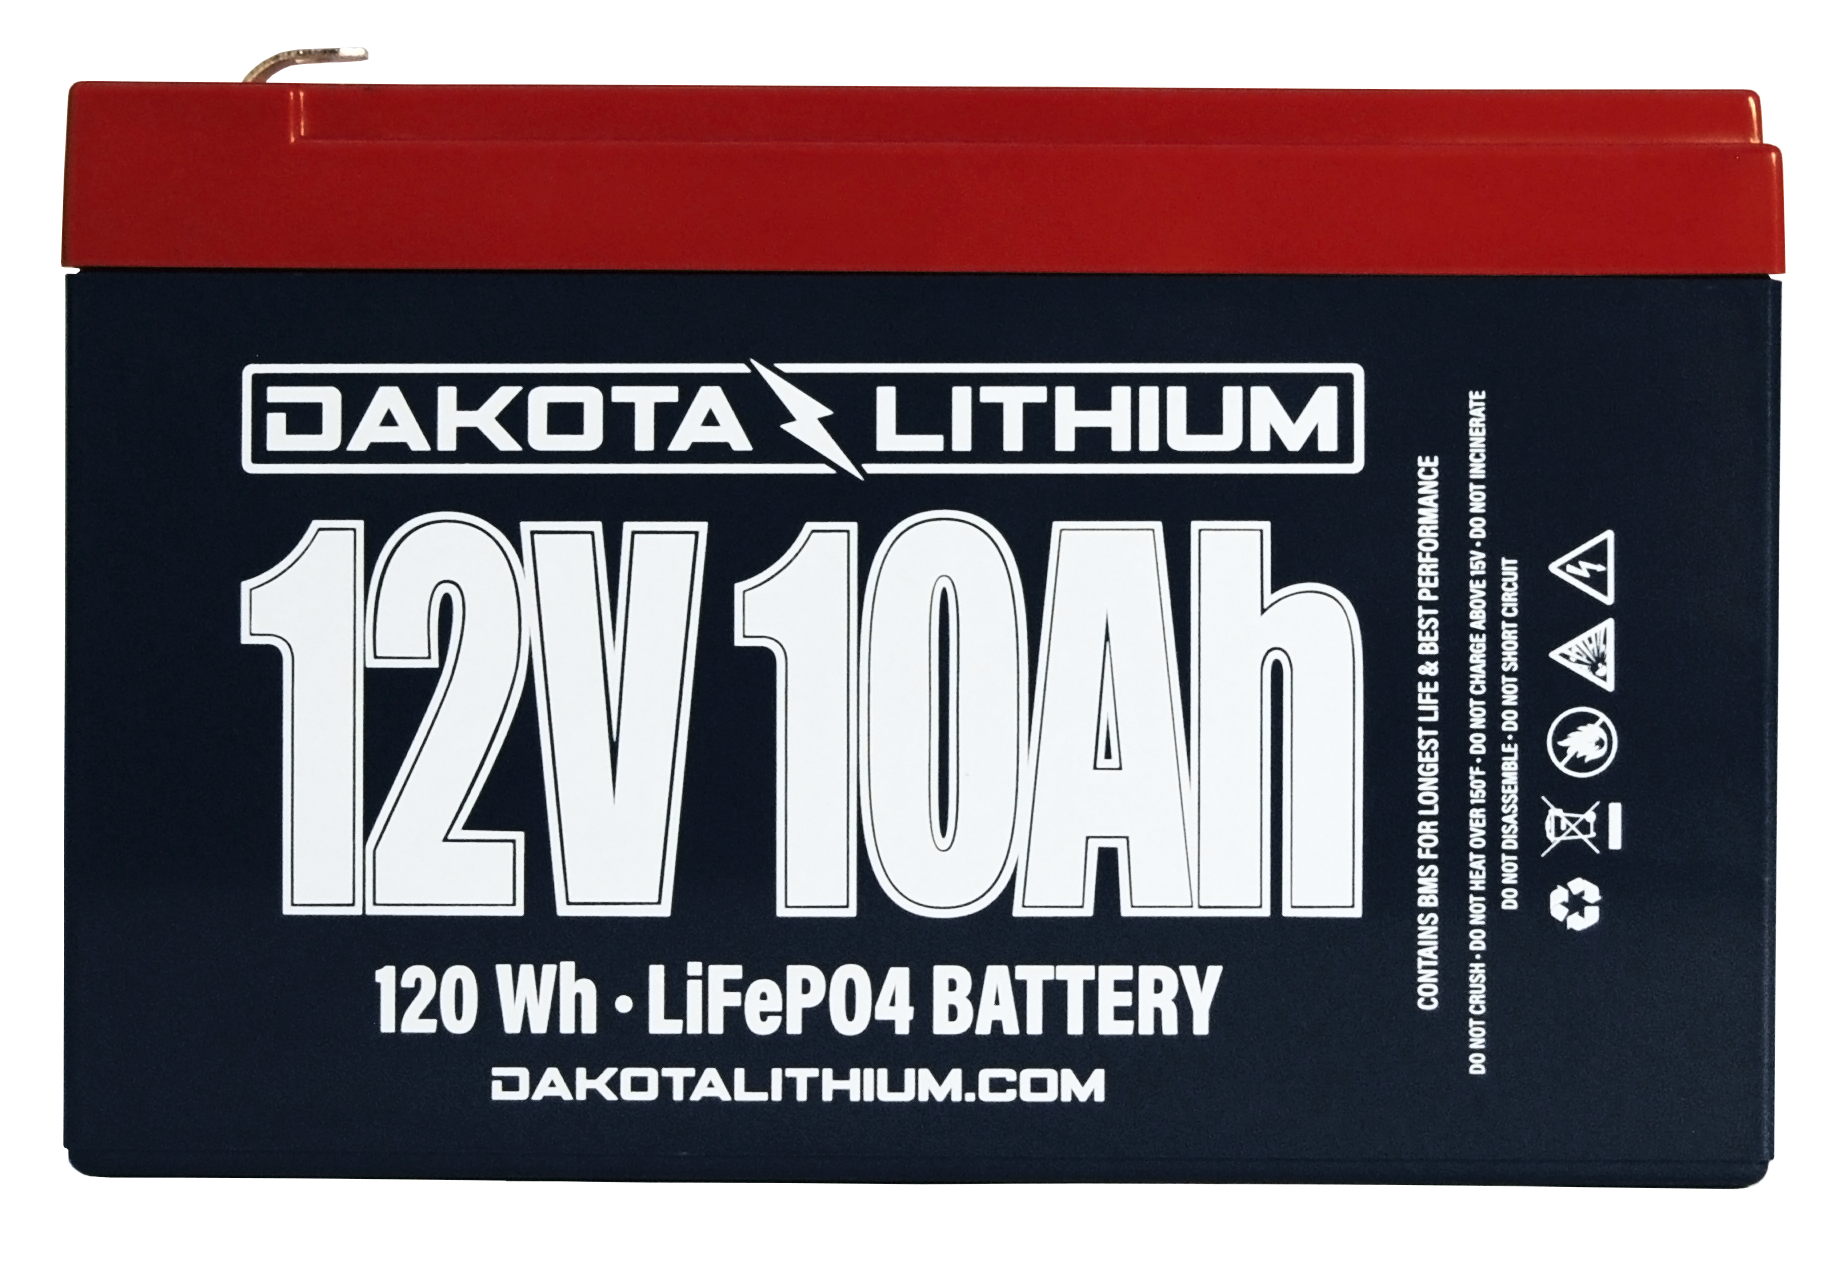 Dakota Lithium 12V 10Ah Battery